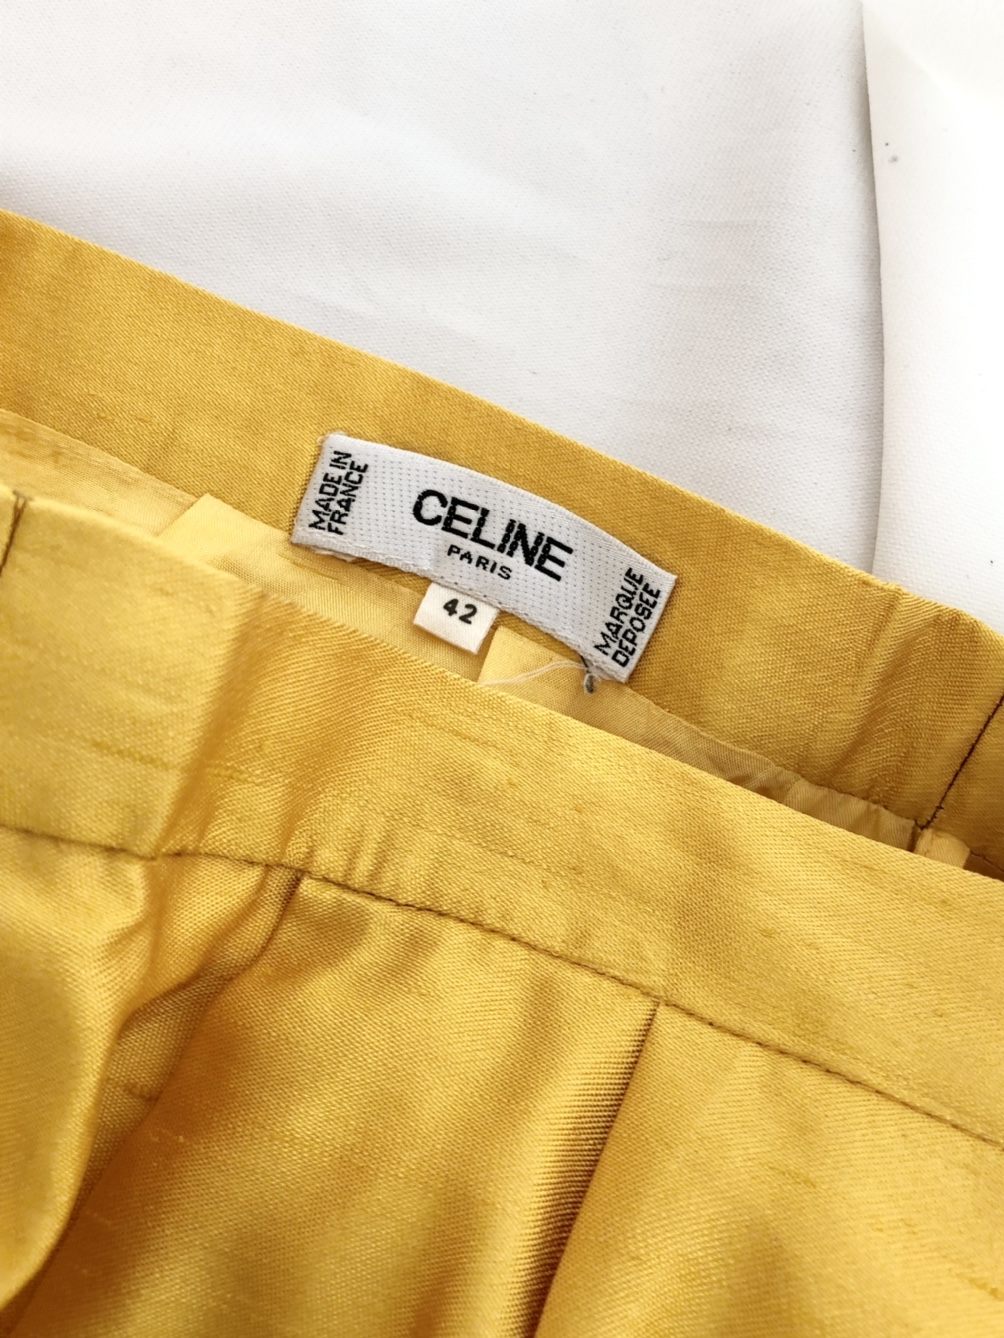 Celine Yellow silk Skirt (made in france)